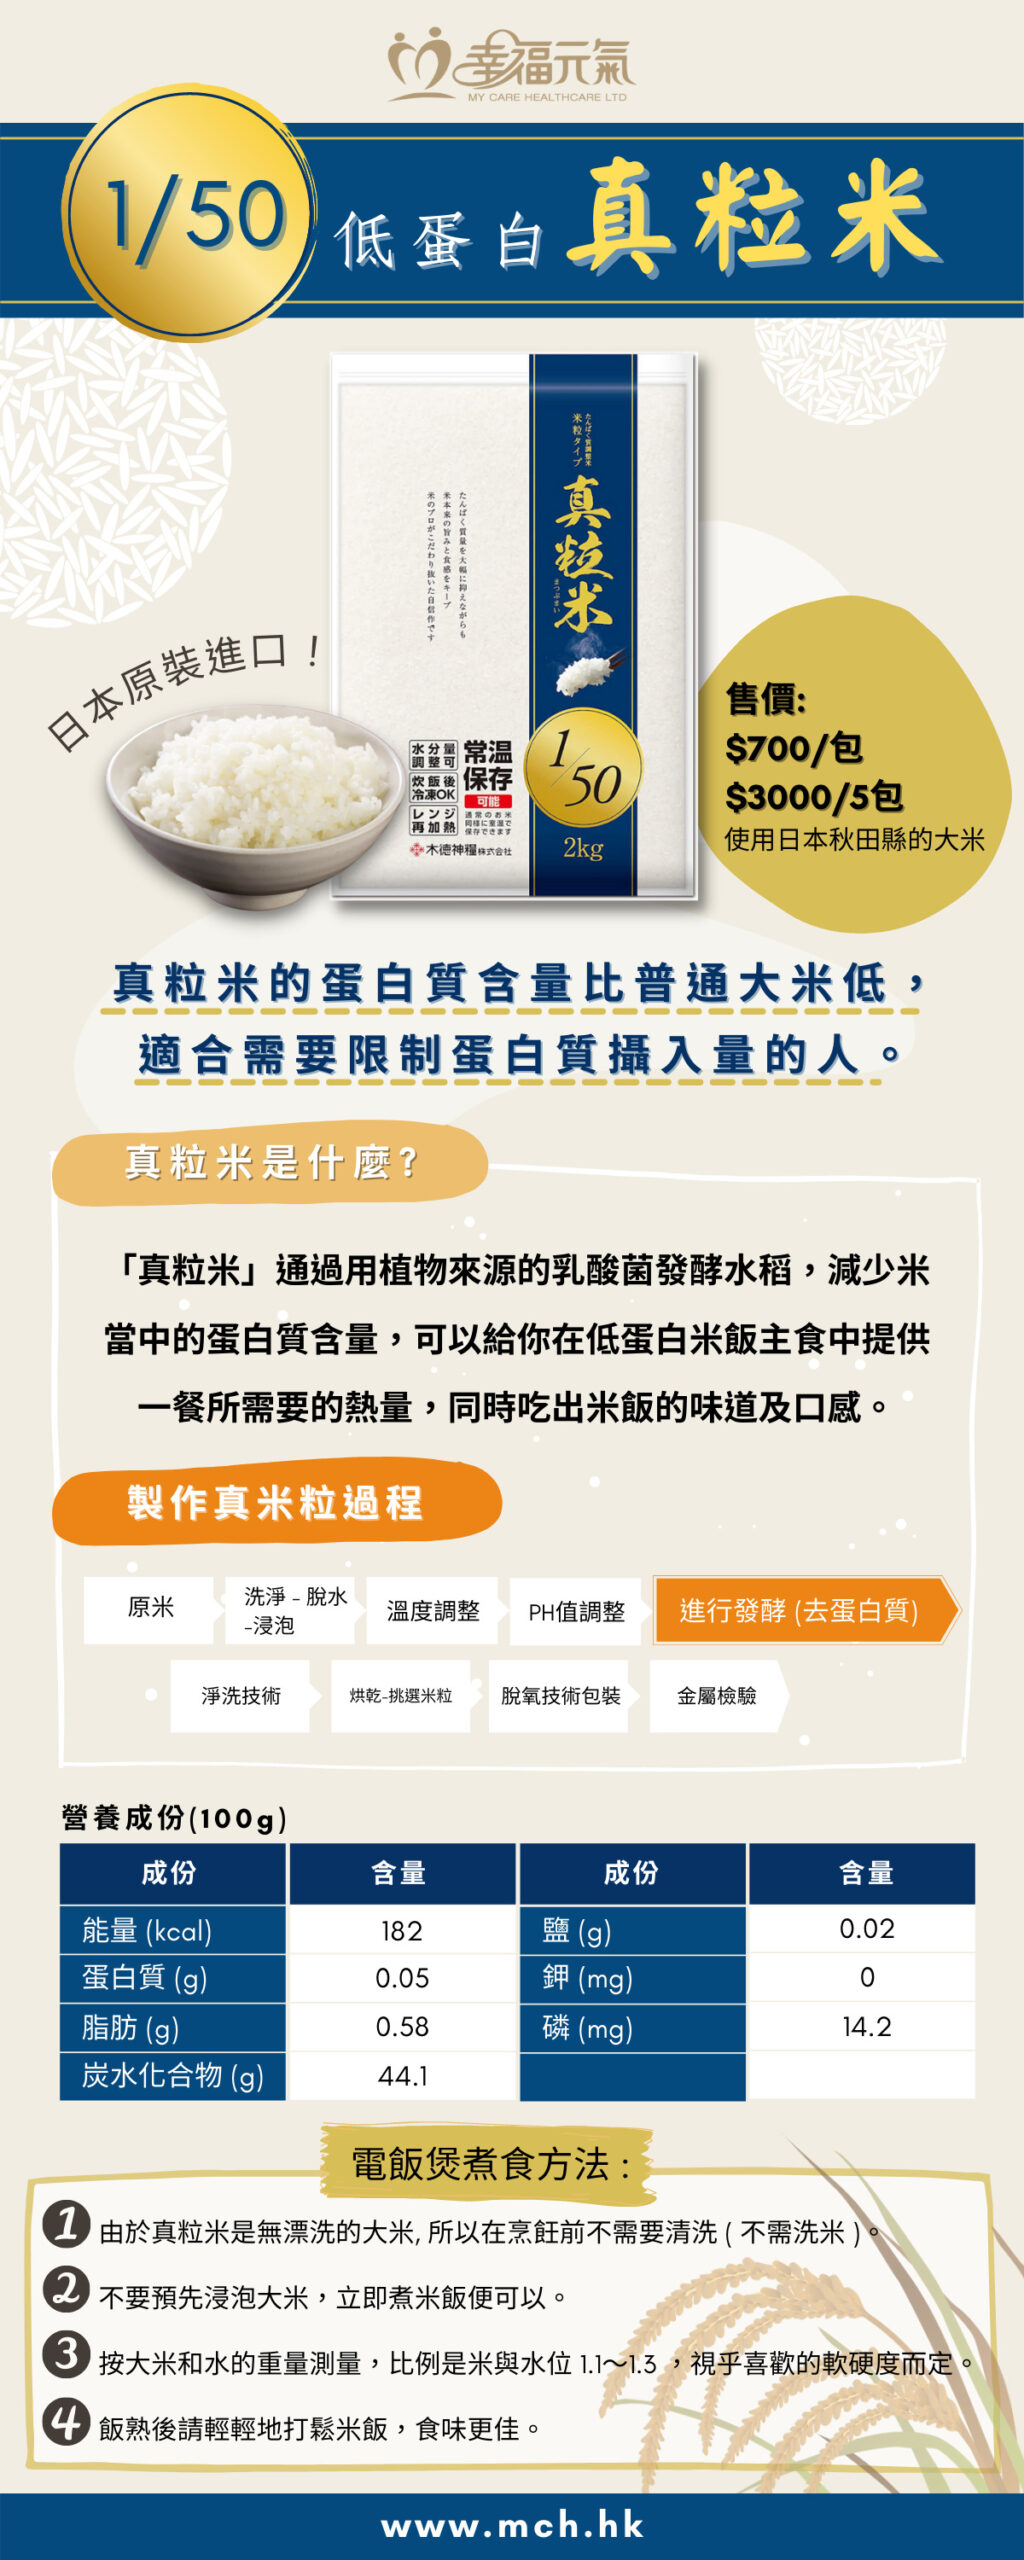 真粒米”低蛋白質大米1/50 2kg| ECHIGO_Matsubu Rice 1/50 2kg – MCH